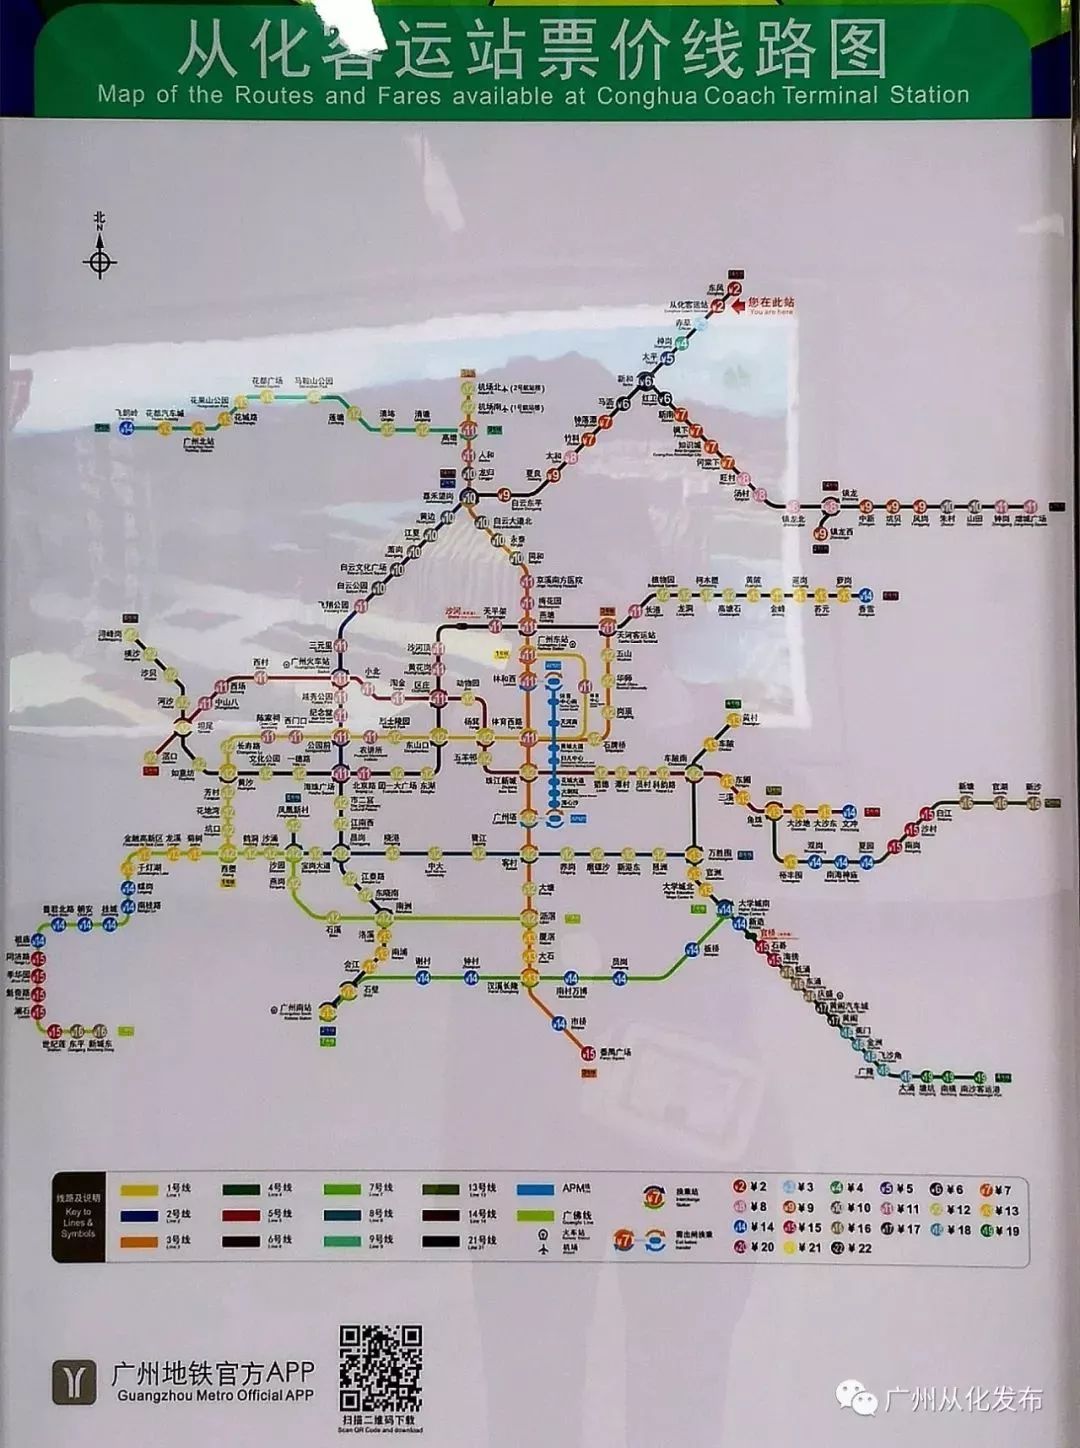 从化区填补广州地铁网最后一块!首次实现区区通地铁